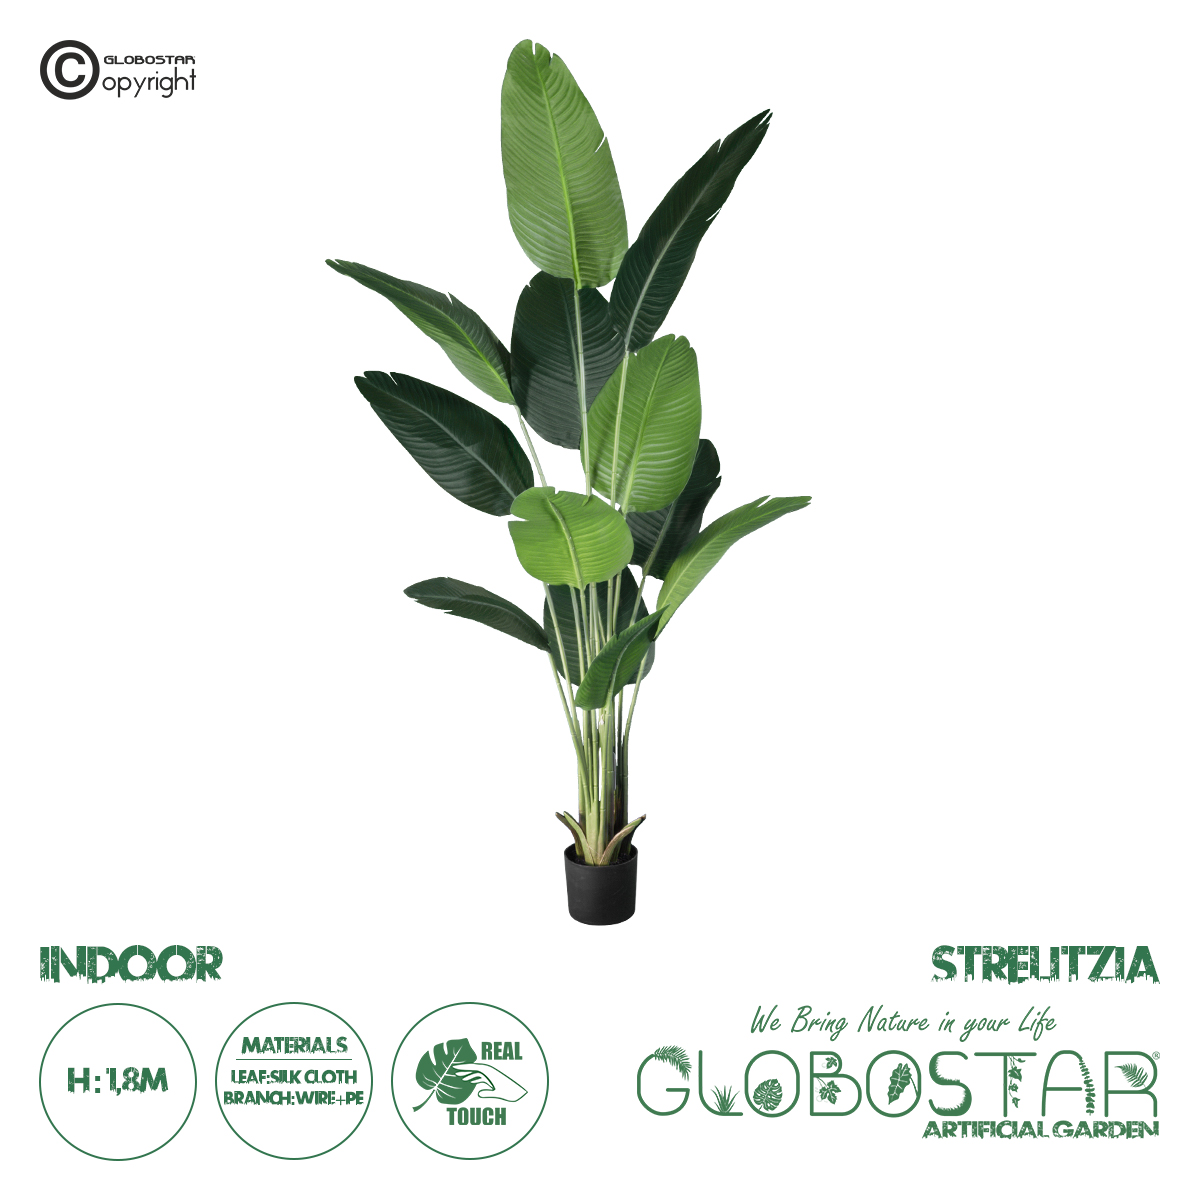 GloboStar® Artificial Garden STRELITZIA 20026 Τεχνητό Διακοσμητικό Φυτό  Στρελίτσια – Πουλί του Παραδείσου Υ180cm